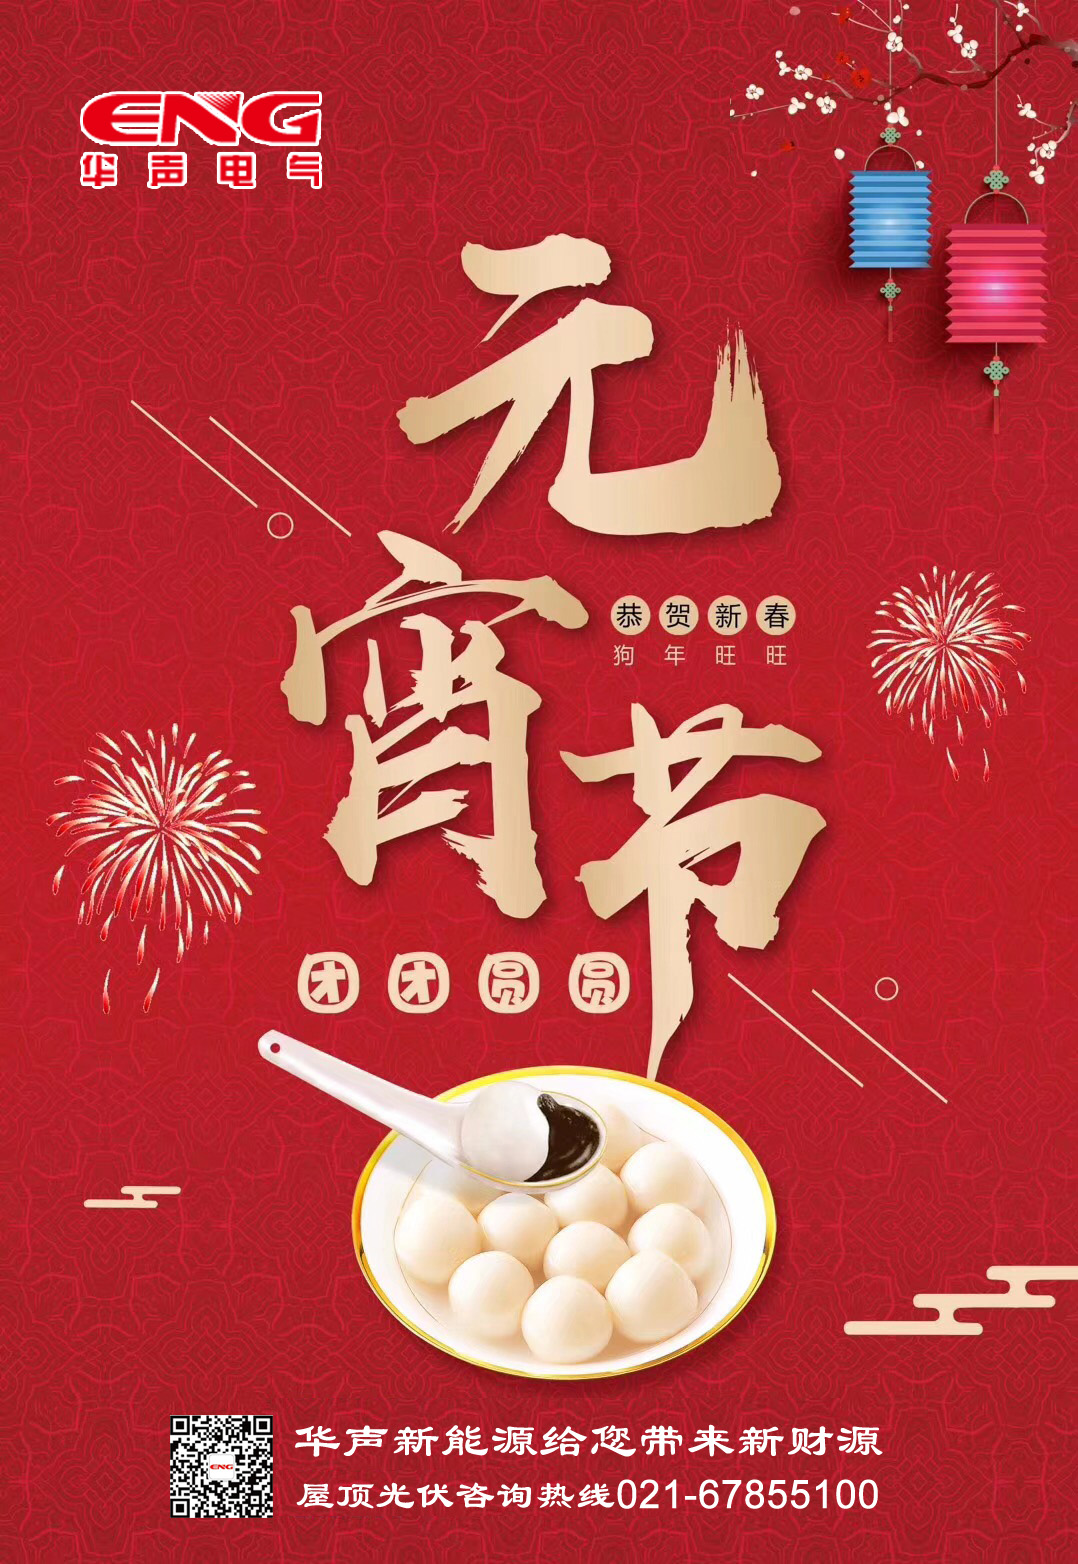 上海华声新能源祝大家元宵节快乐！团团圆圆！甜甜蜜蜜！顺顺利利！健健康康！